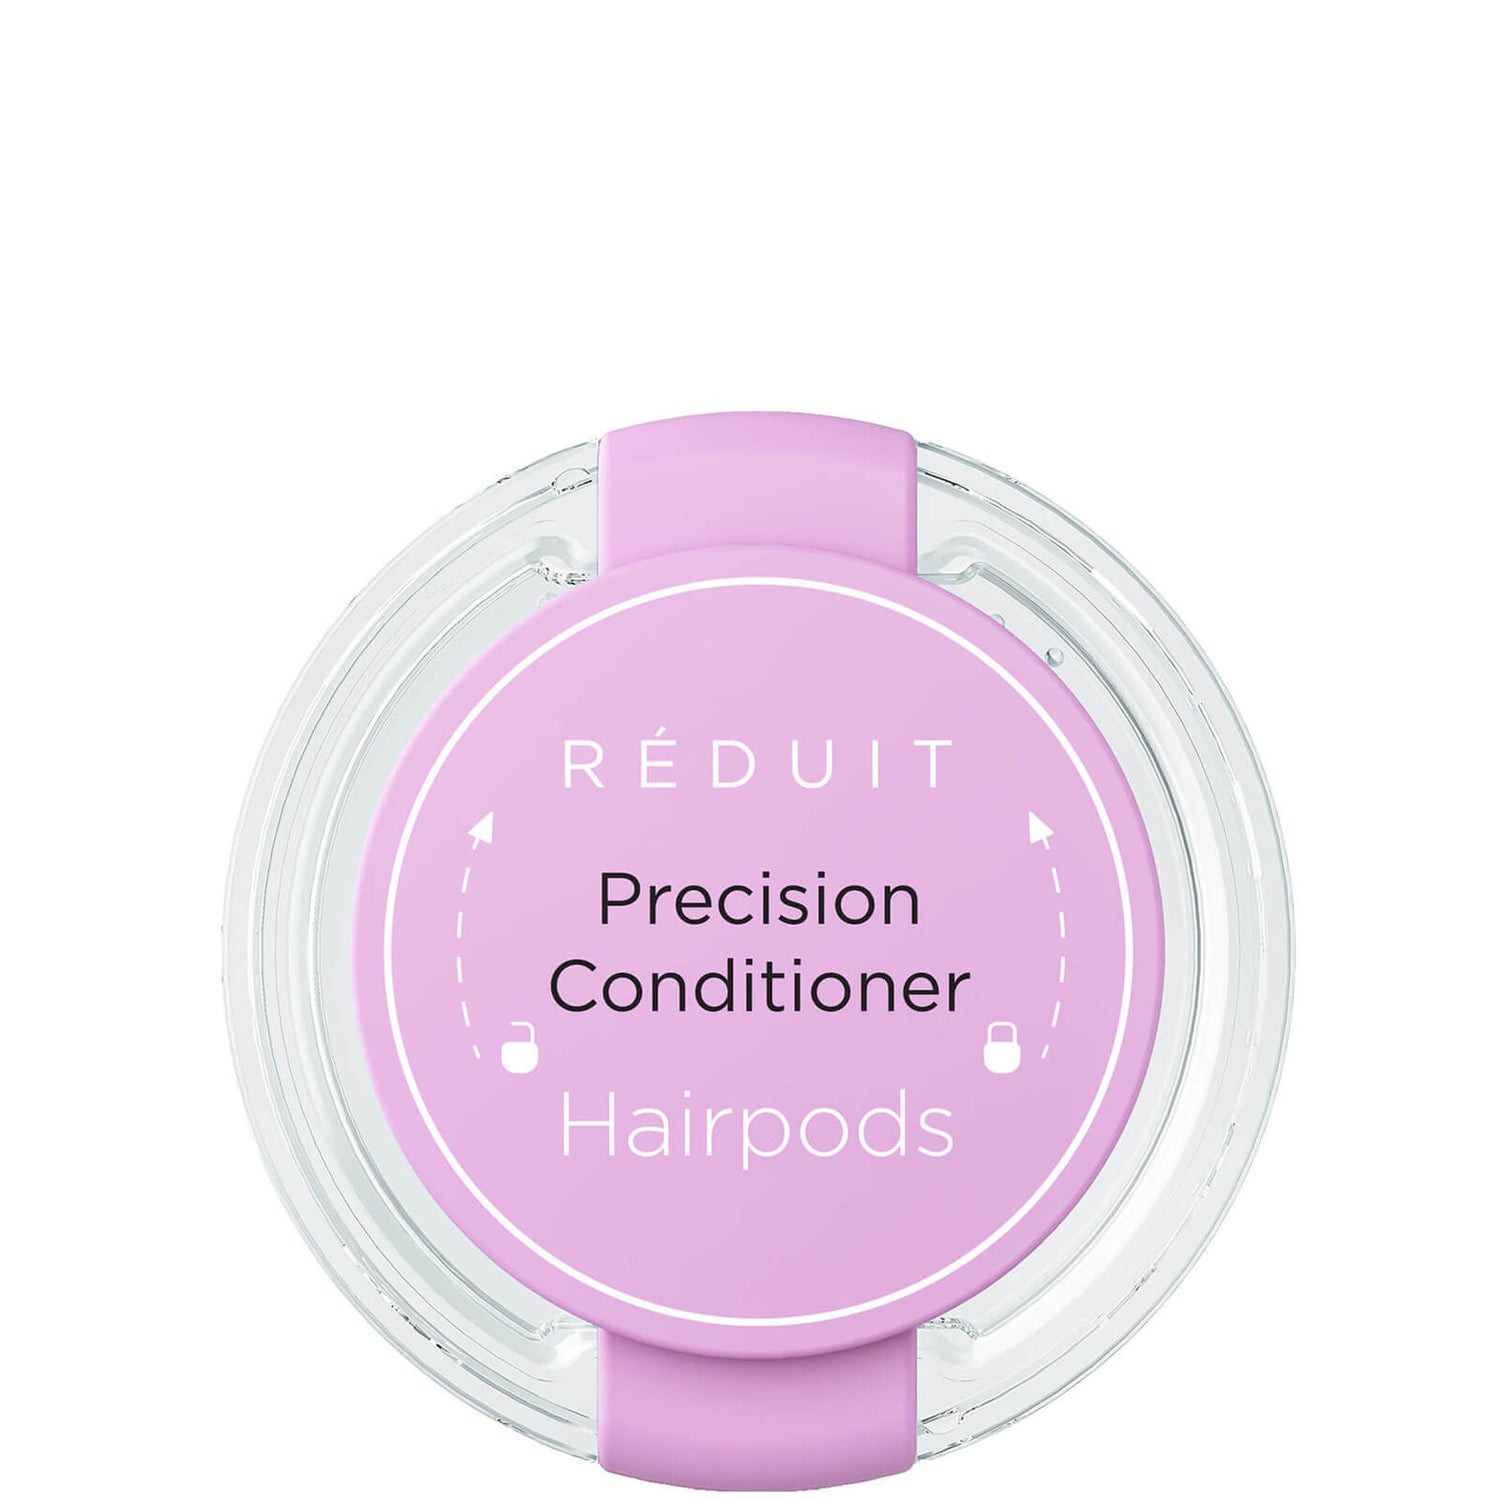 RÉDUIT Hairpods Precision Conditioner 5ml